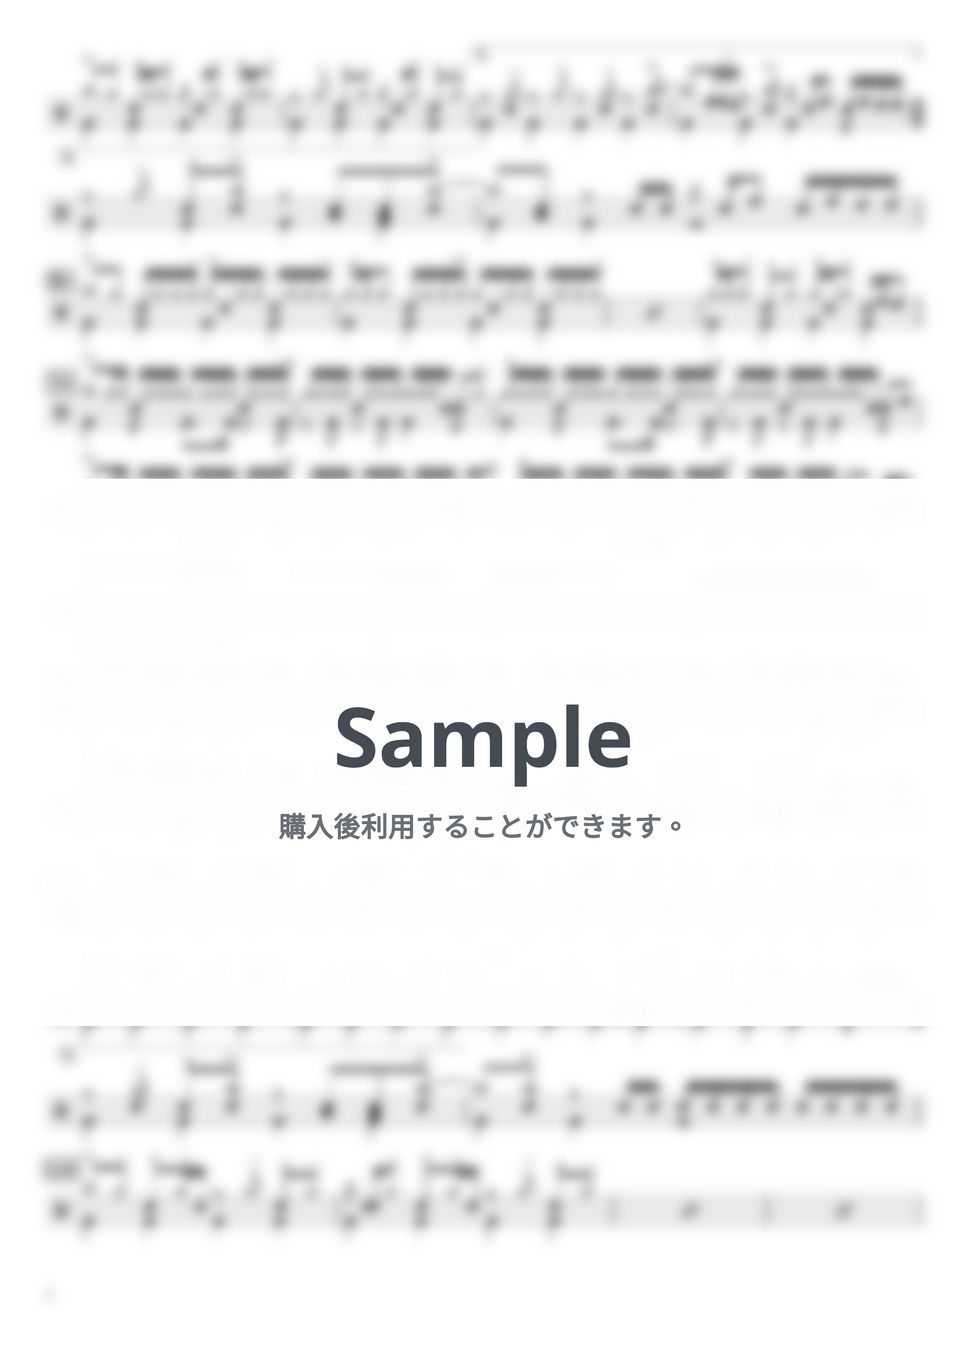 結束バンド - 星座になれたら (ドラム譜のみ) by YUTO